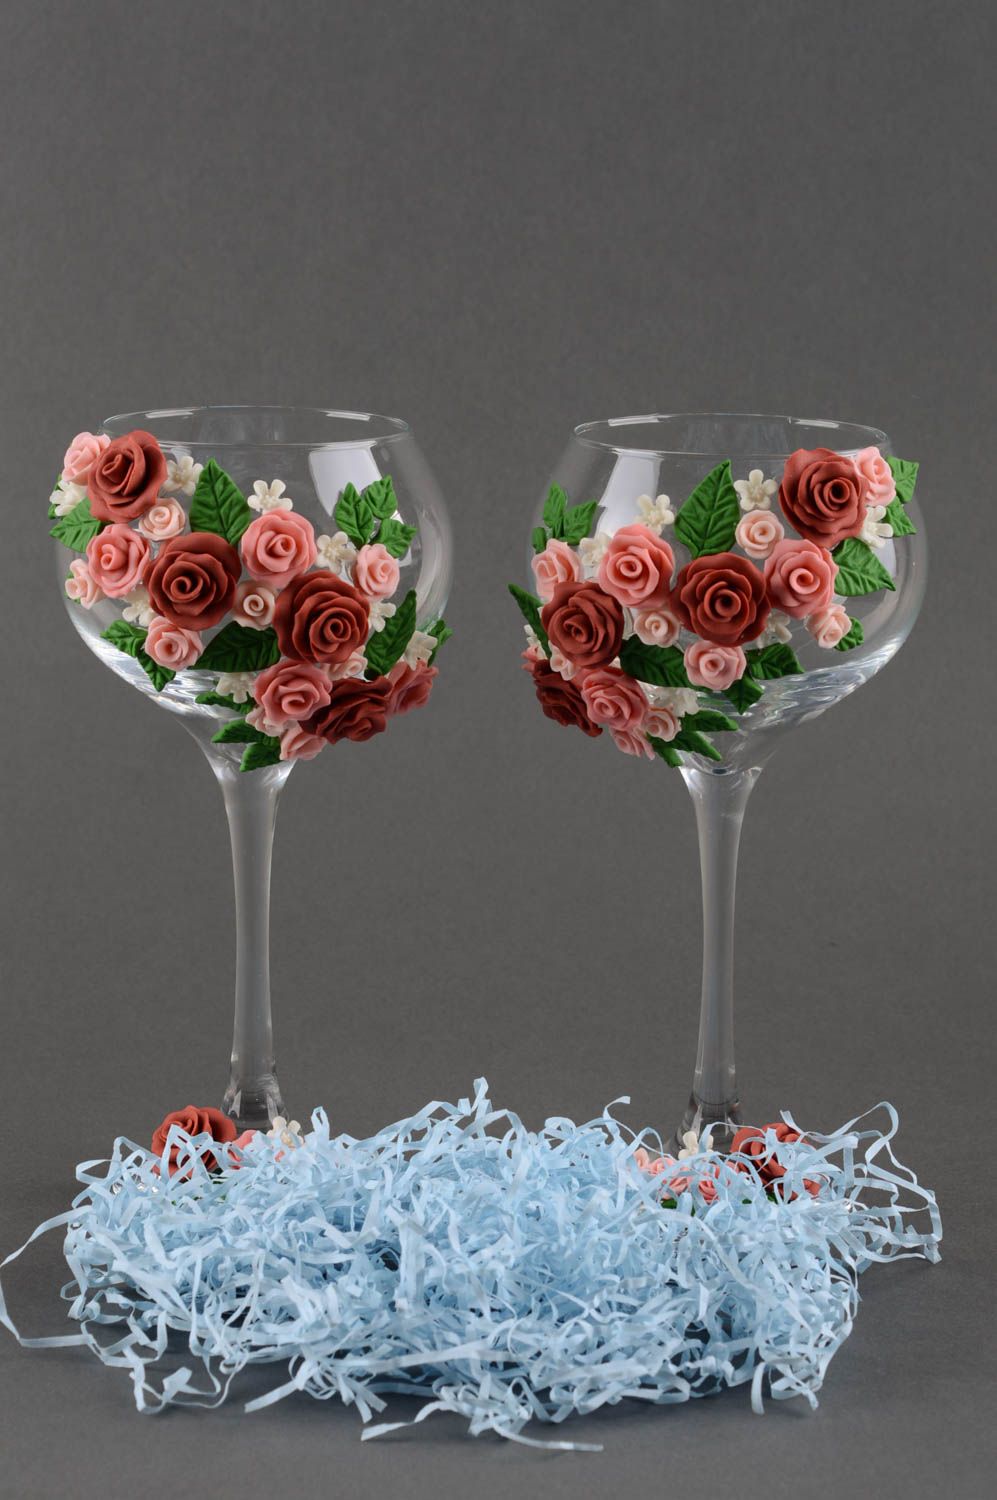 Handmade wedding decor best wine glasses champagne glasses best gift for wedding photo 1